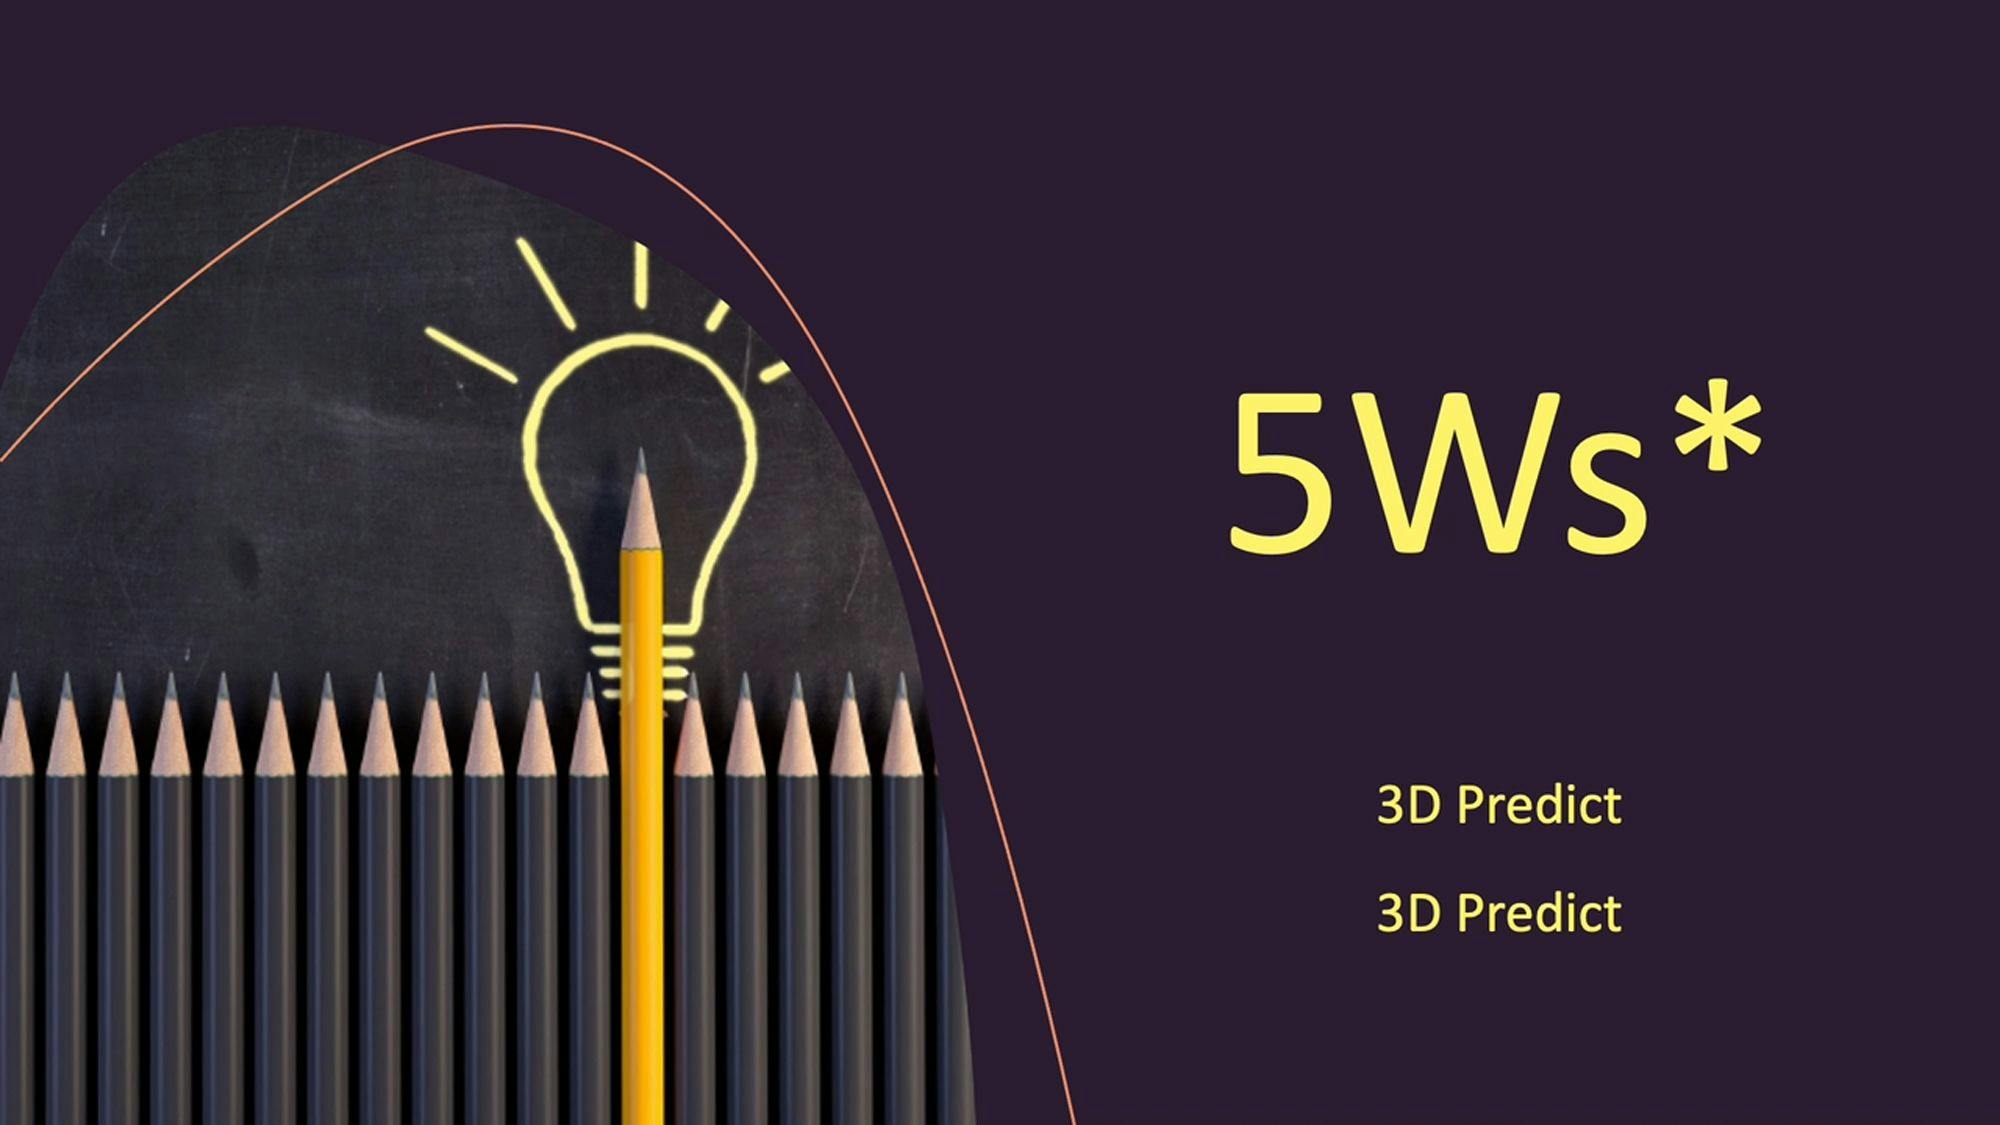 5Ws Video - 3D Predict